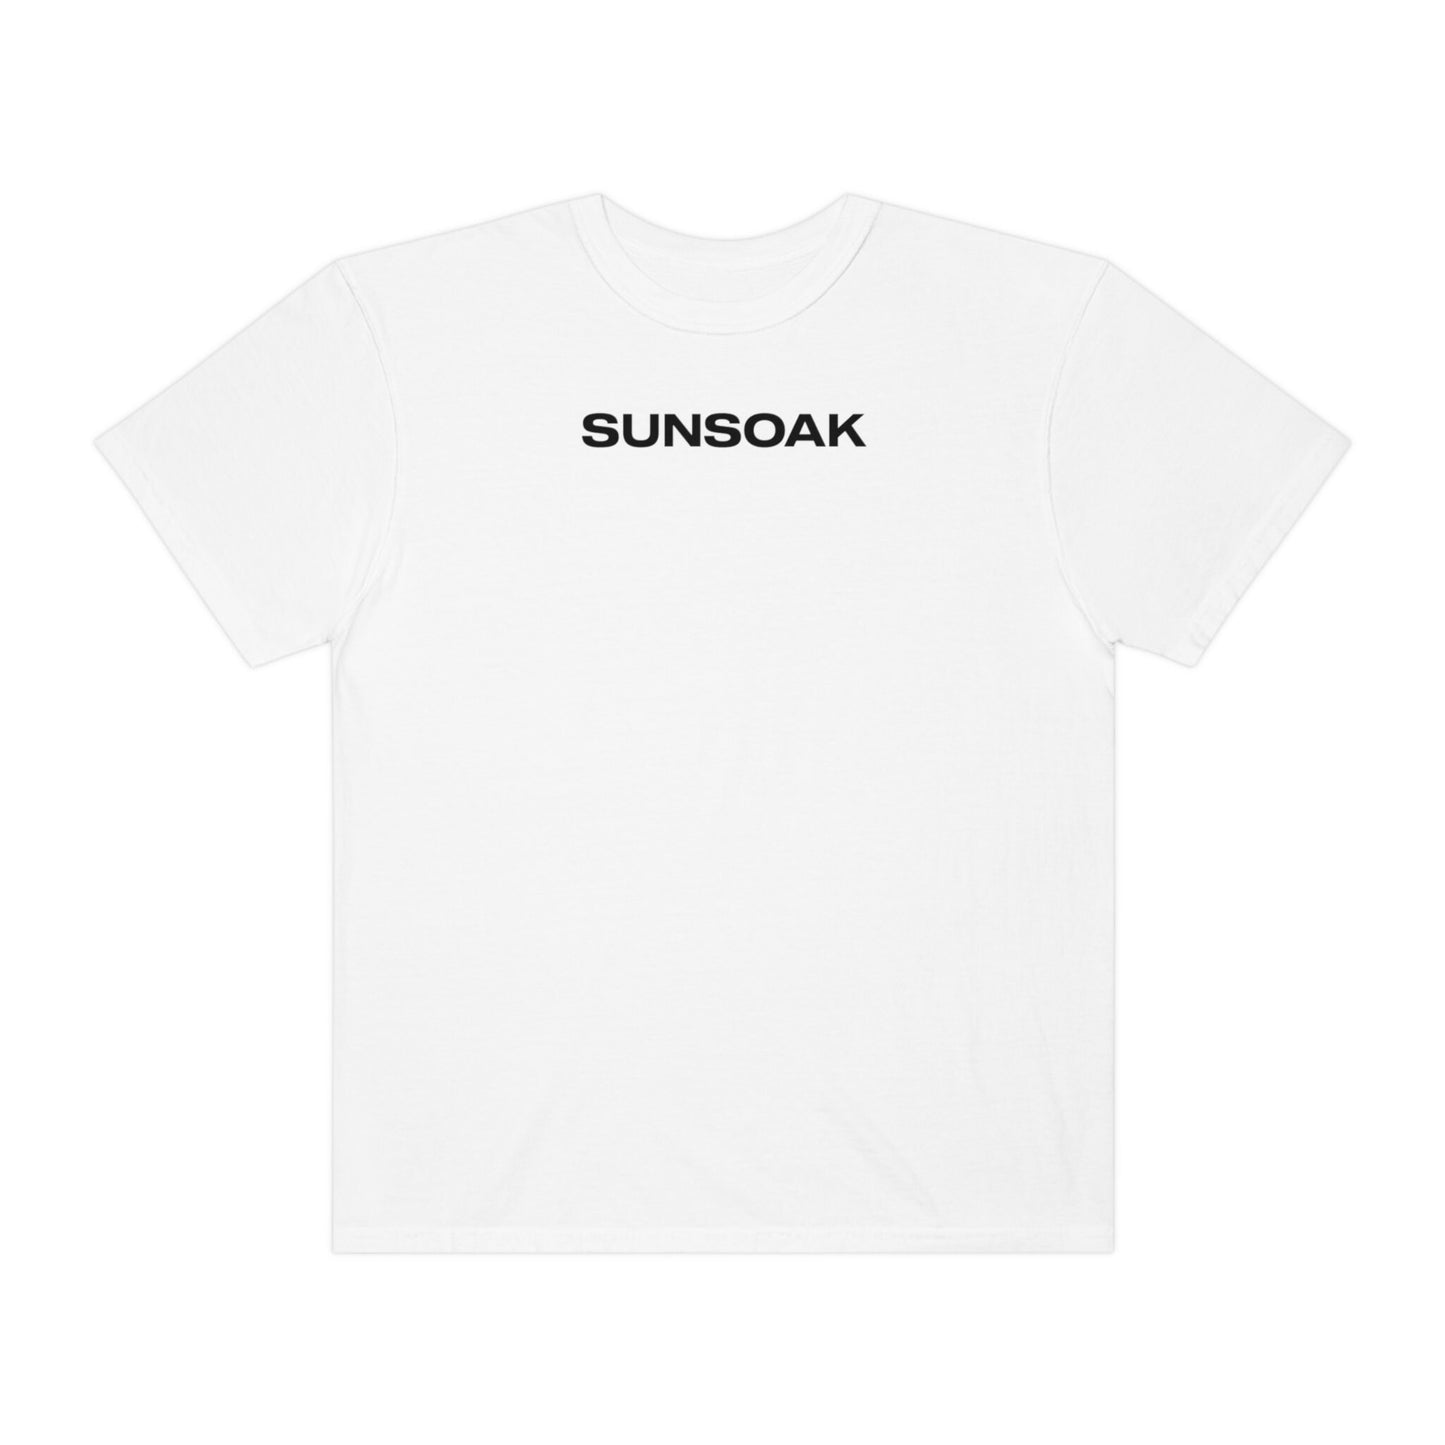 SUNSOAK "Logo" (Multiple colors)